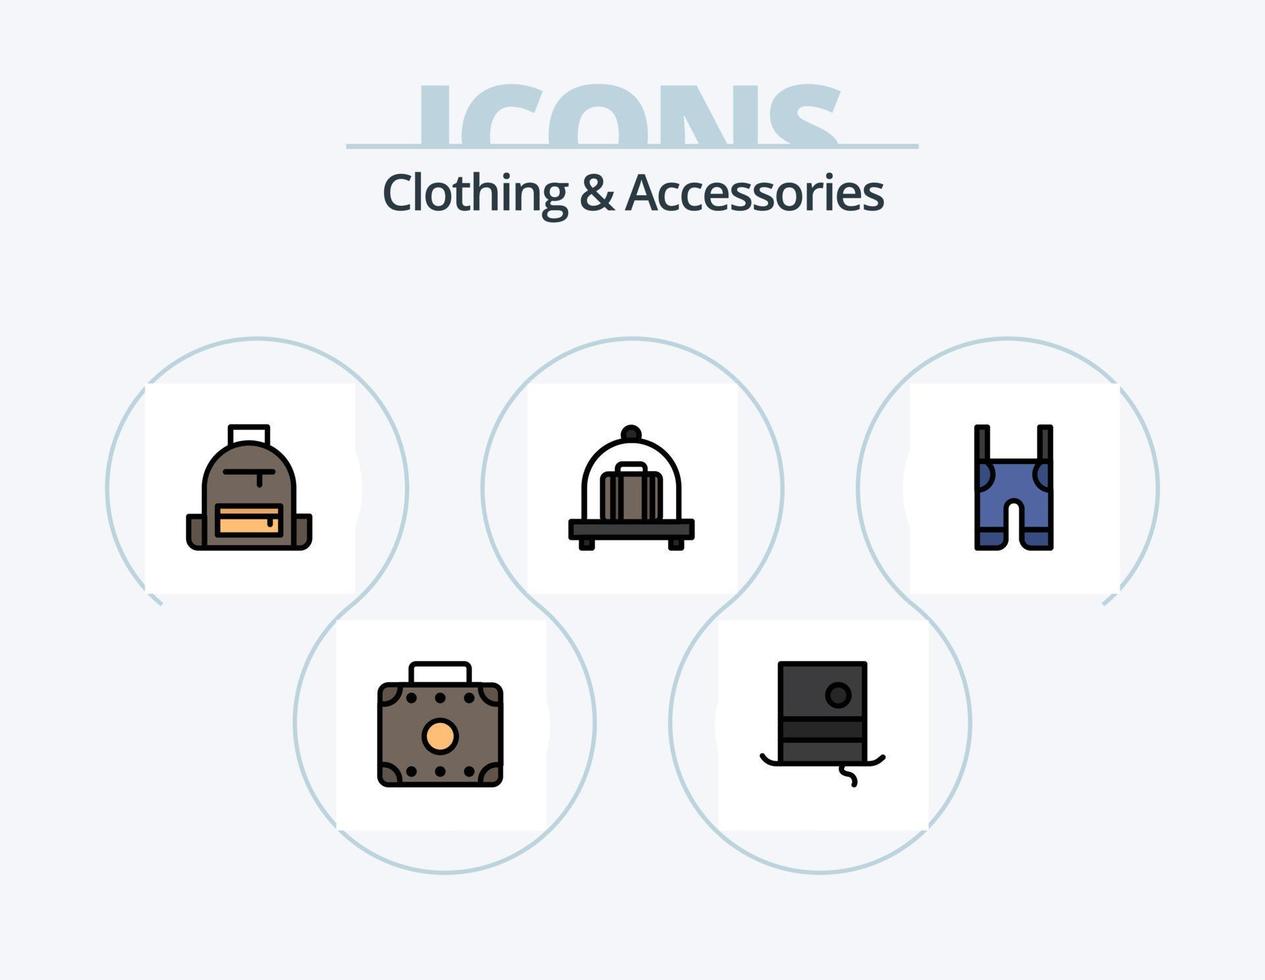 linha de roupas e acessórios cheia de ícones pack 5 design de ícones. alças. roupas. nadadeiras. aparelho ortodôntico. roupas vetor